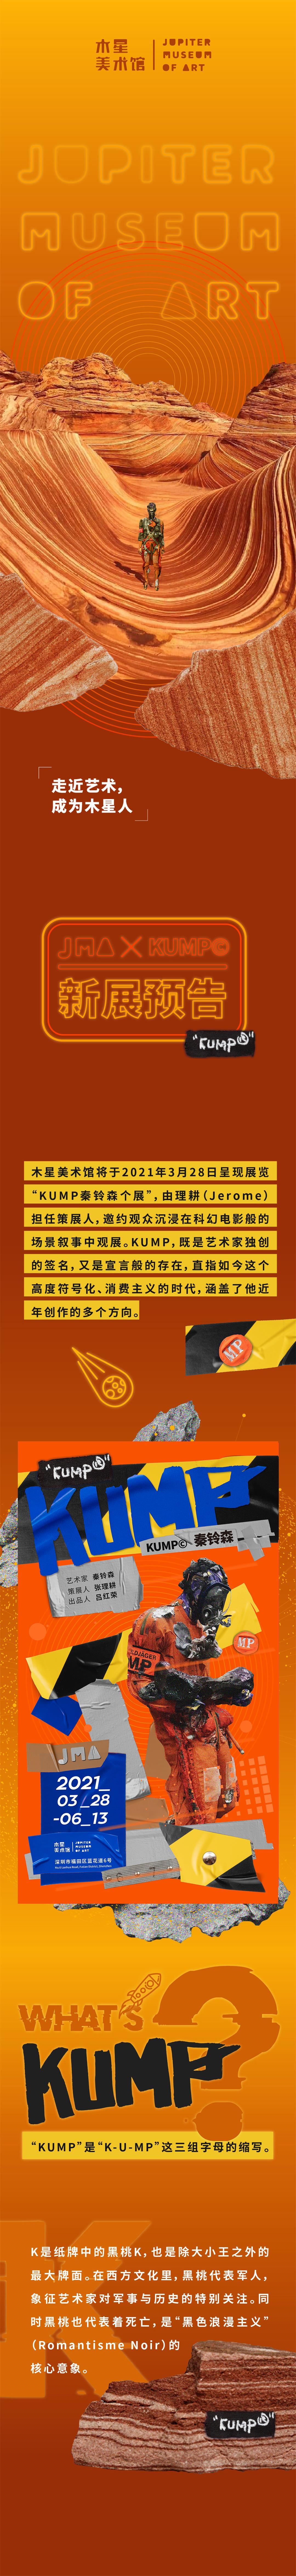 KUMP推文长图-z01.jpg